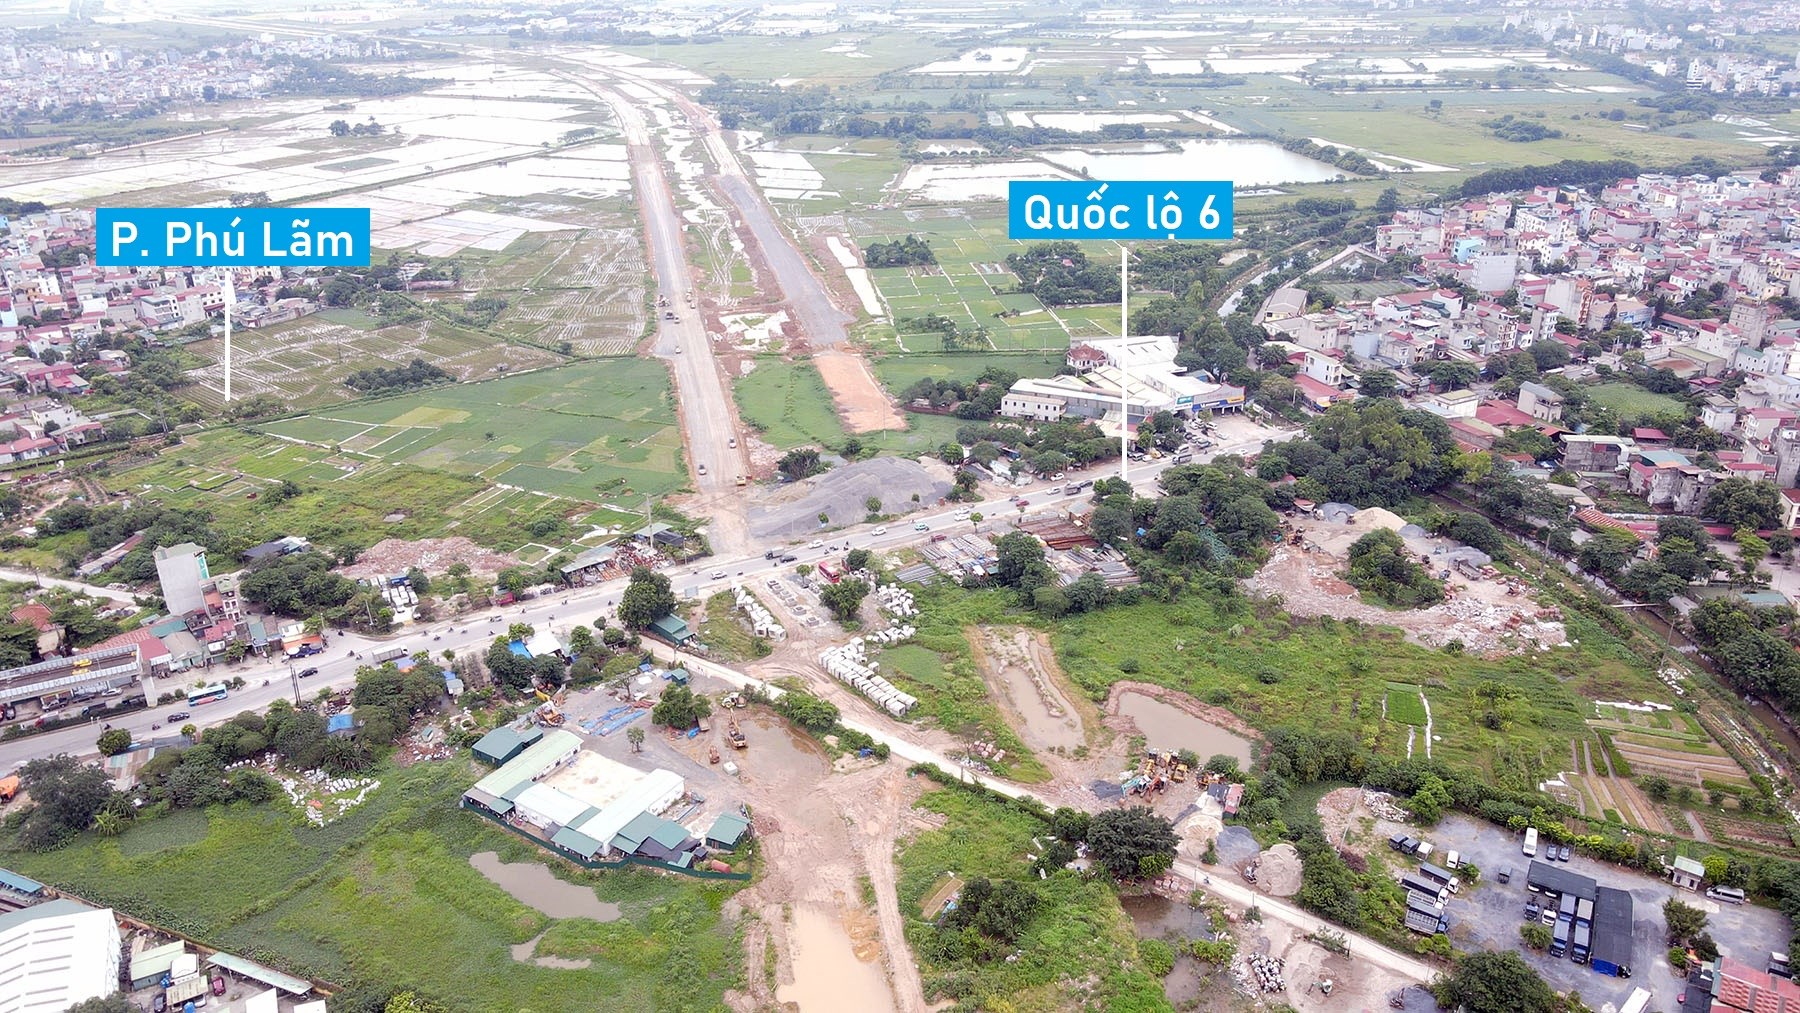 Hình ảnh đường vành đai 4 Hà Nội qua quận Hà Đông sau một năm thi công